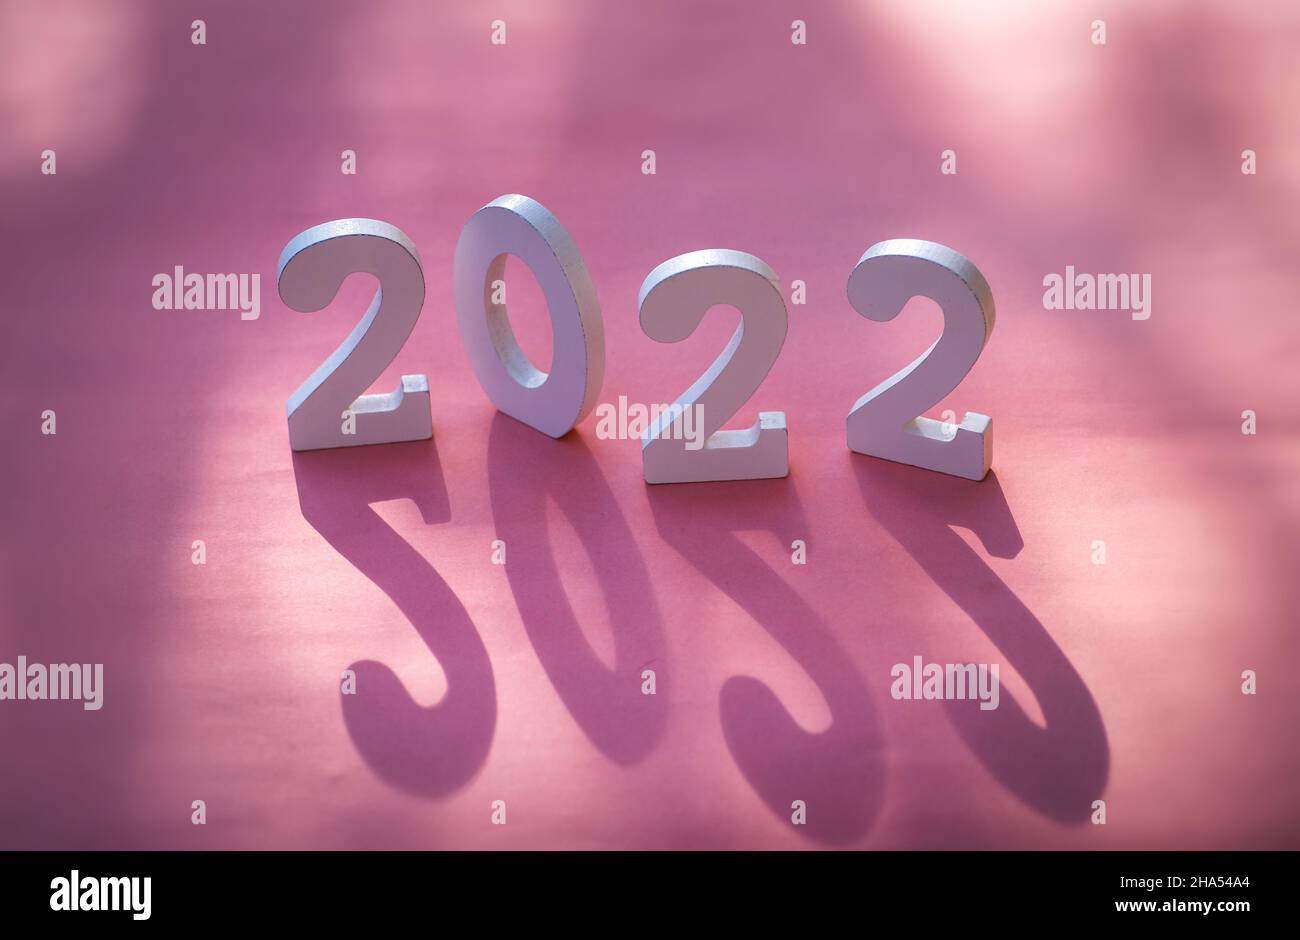 Cartel de Año Nuevo de 2022 hecho de madera sobre fondo festivo con espacio de copia sobre fondo rosa con fuerte sombra para crear profundidad Foto de stock